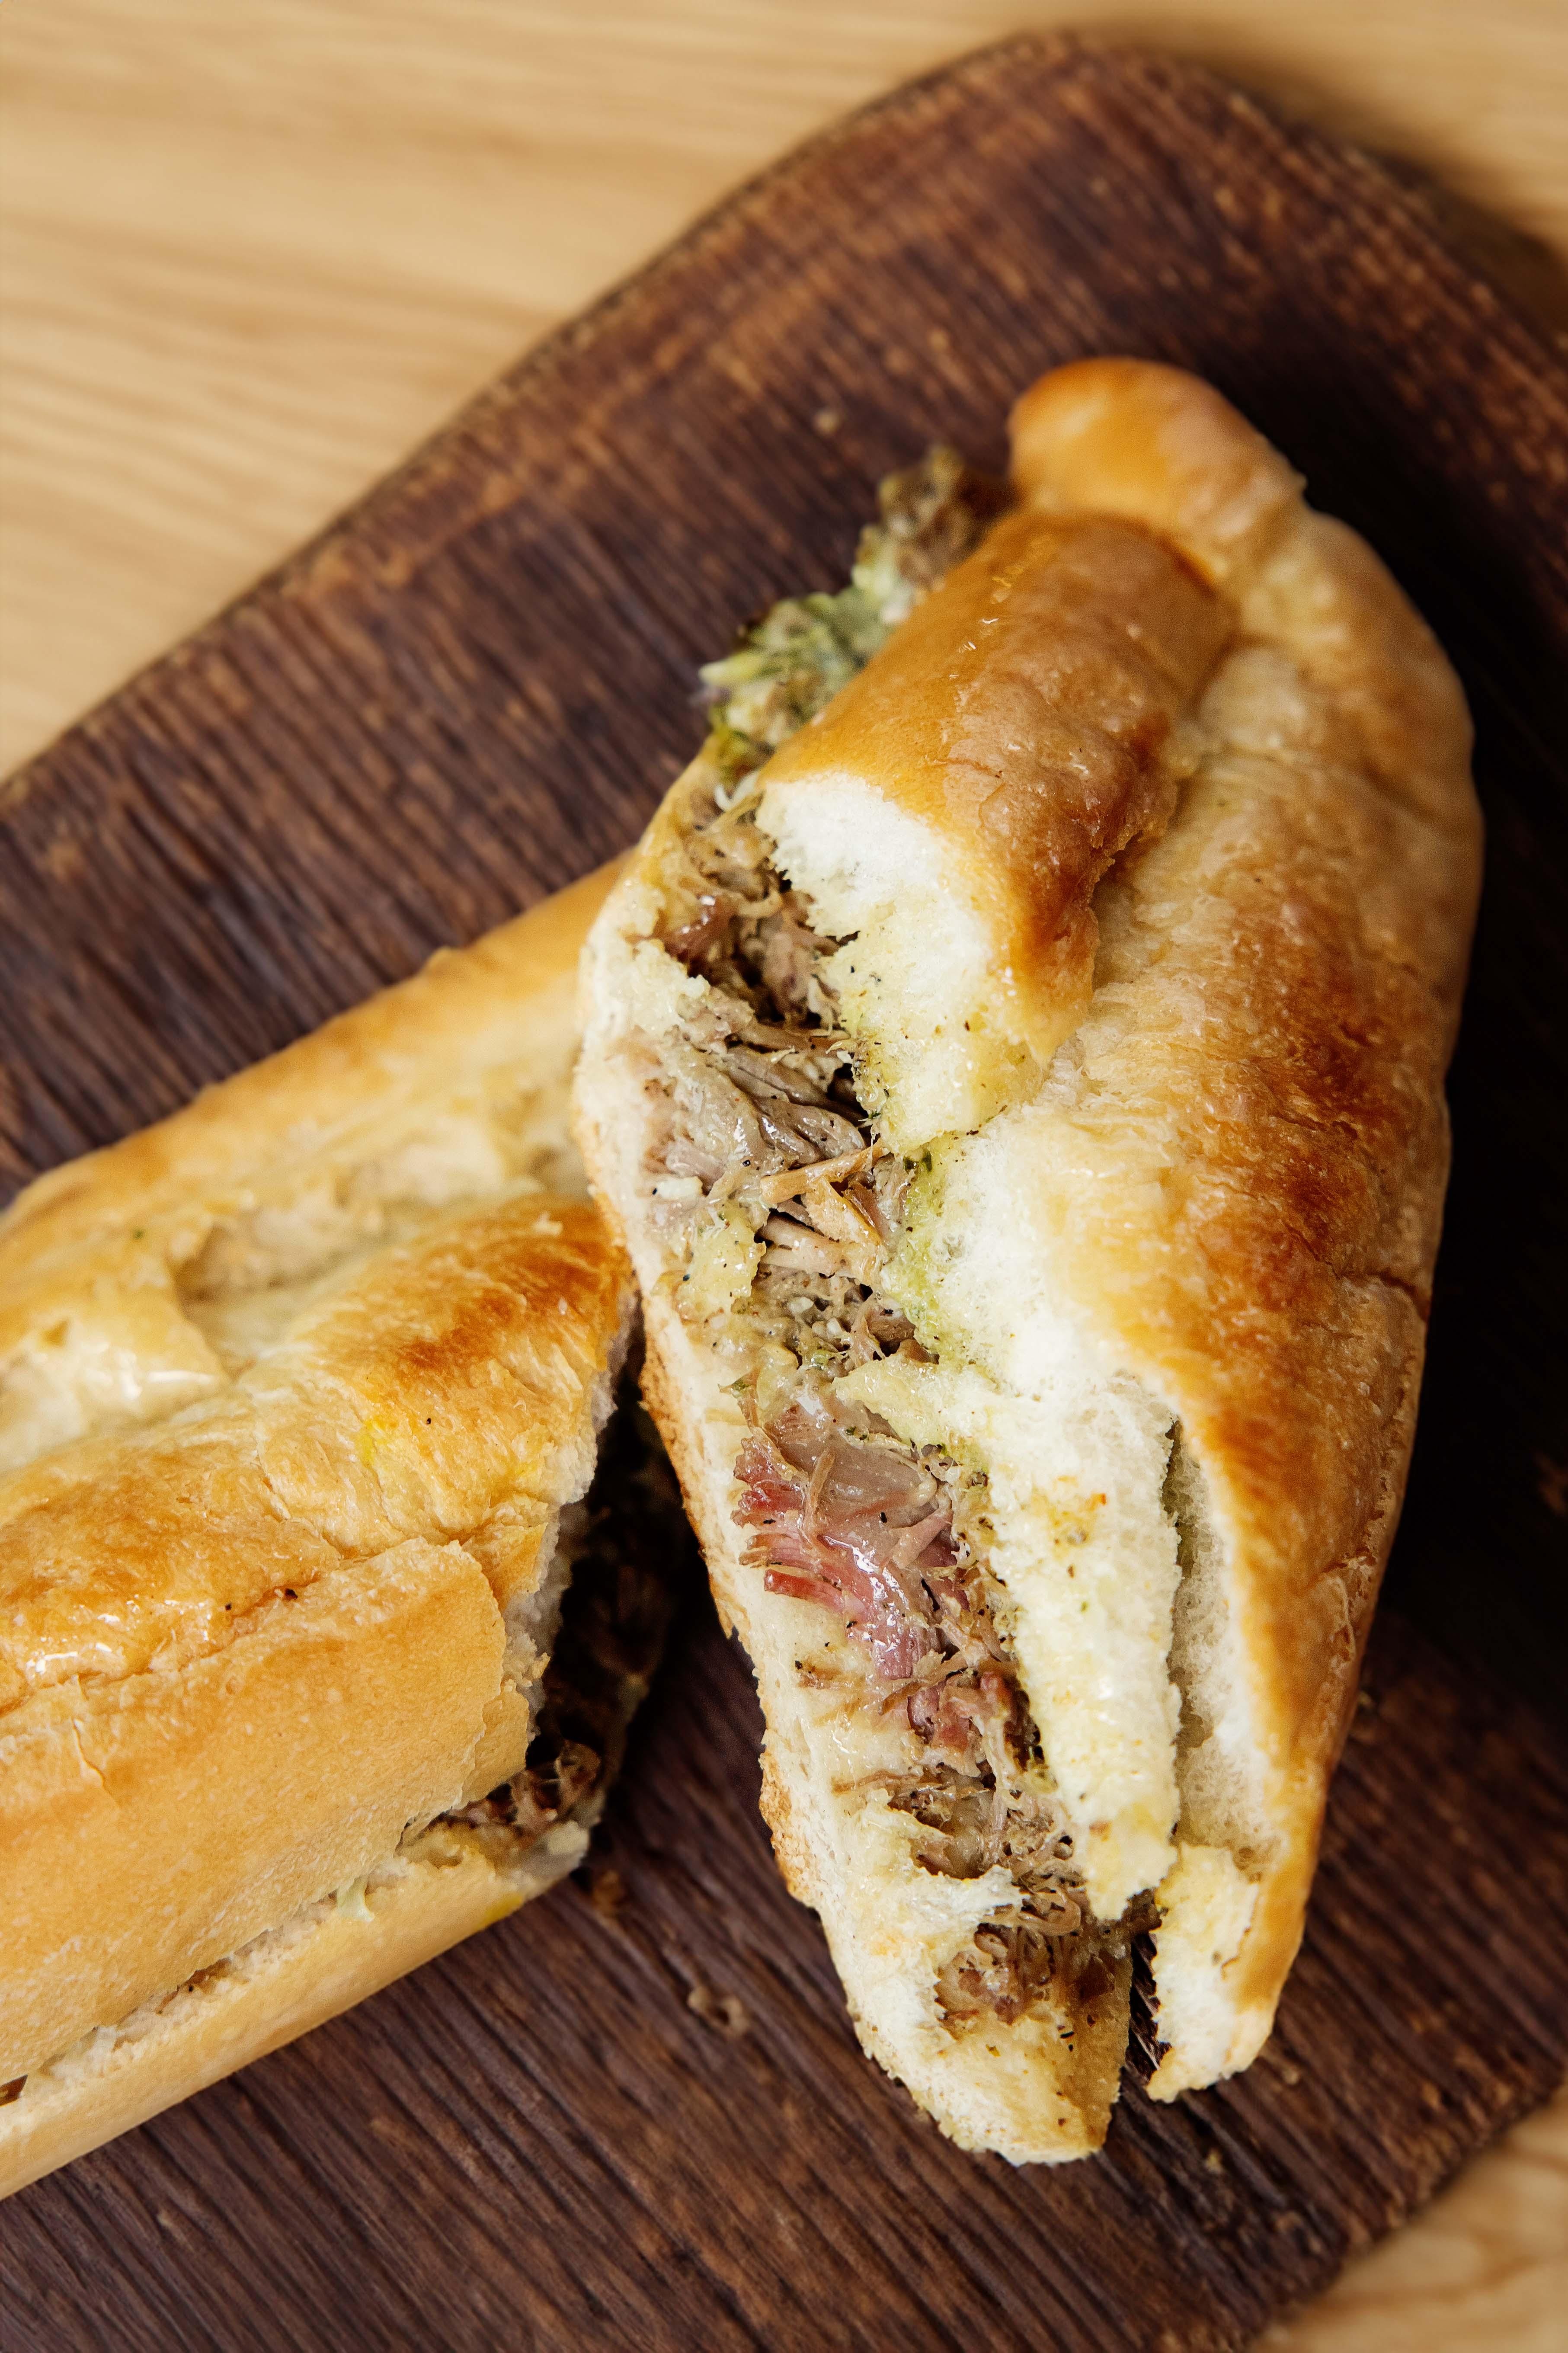 Roasted Pork Sandwich / Pan con Lechon